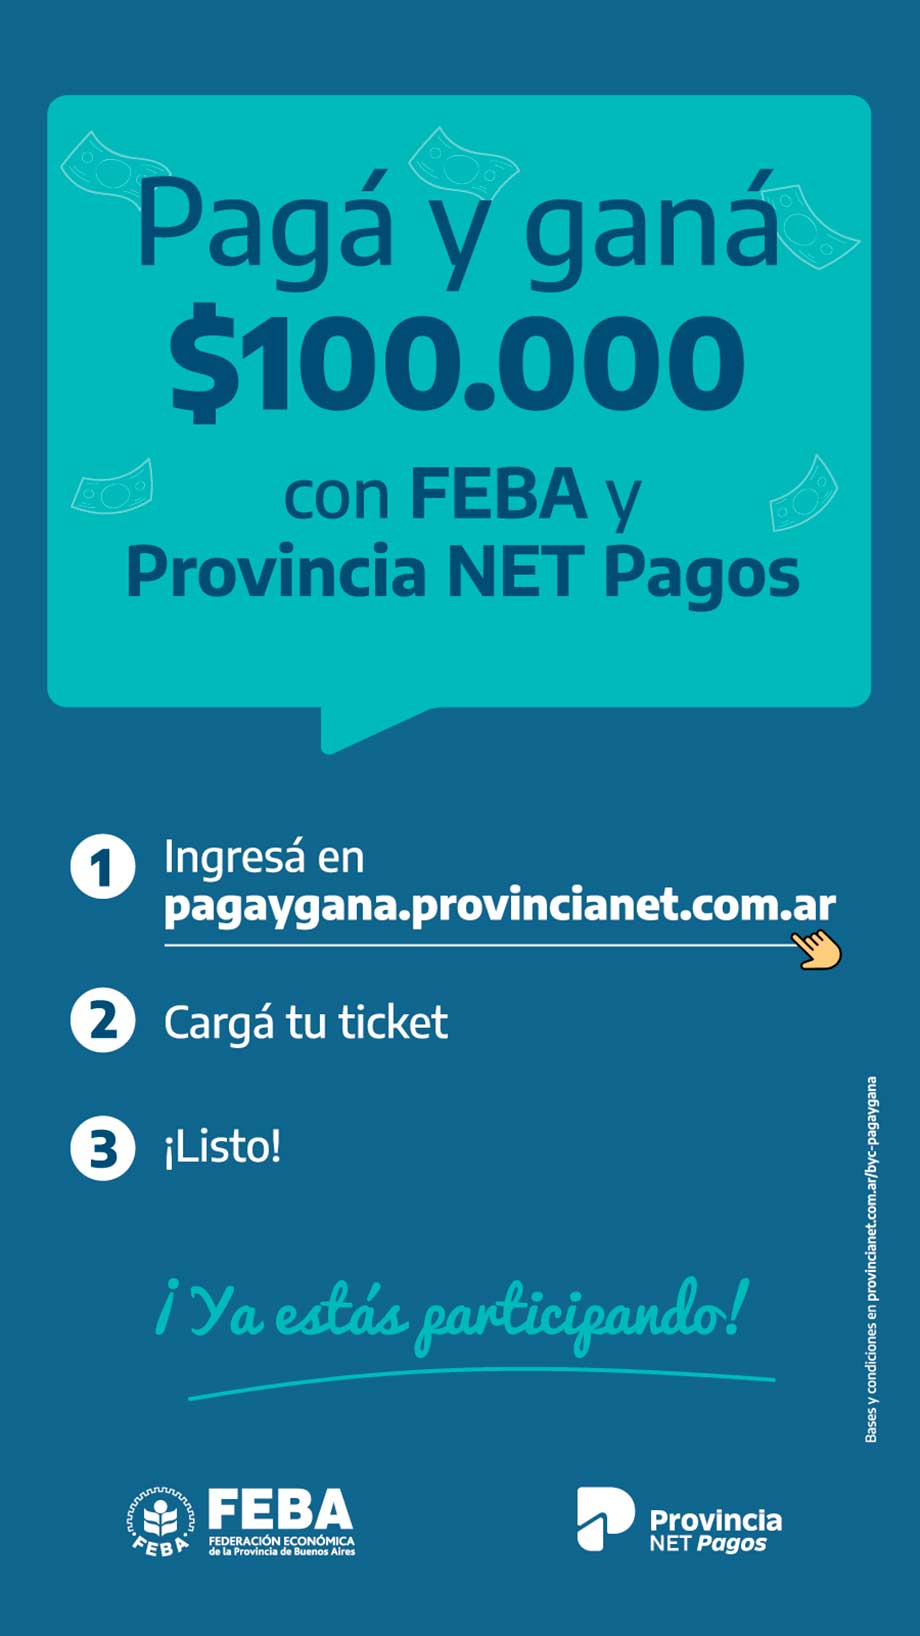 Concurso Pagá y Ganá con FEBA y Provincia NET Pagos